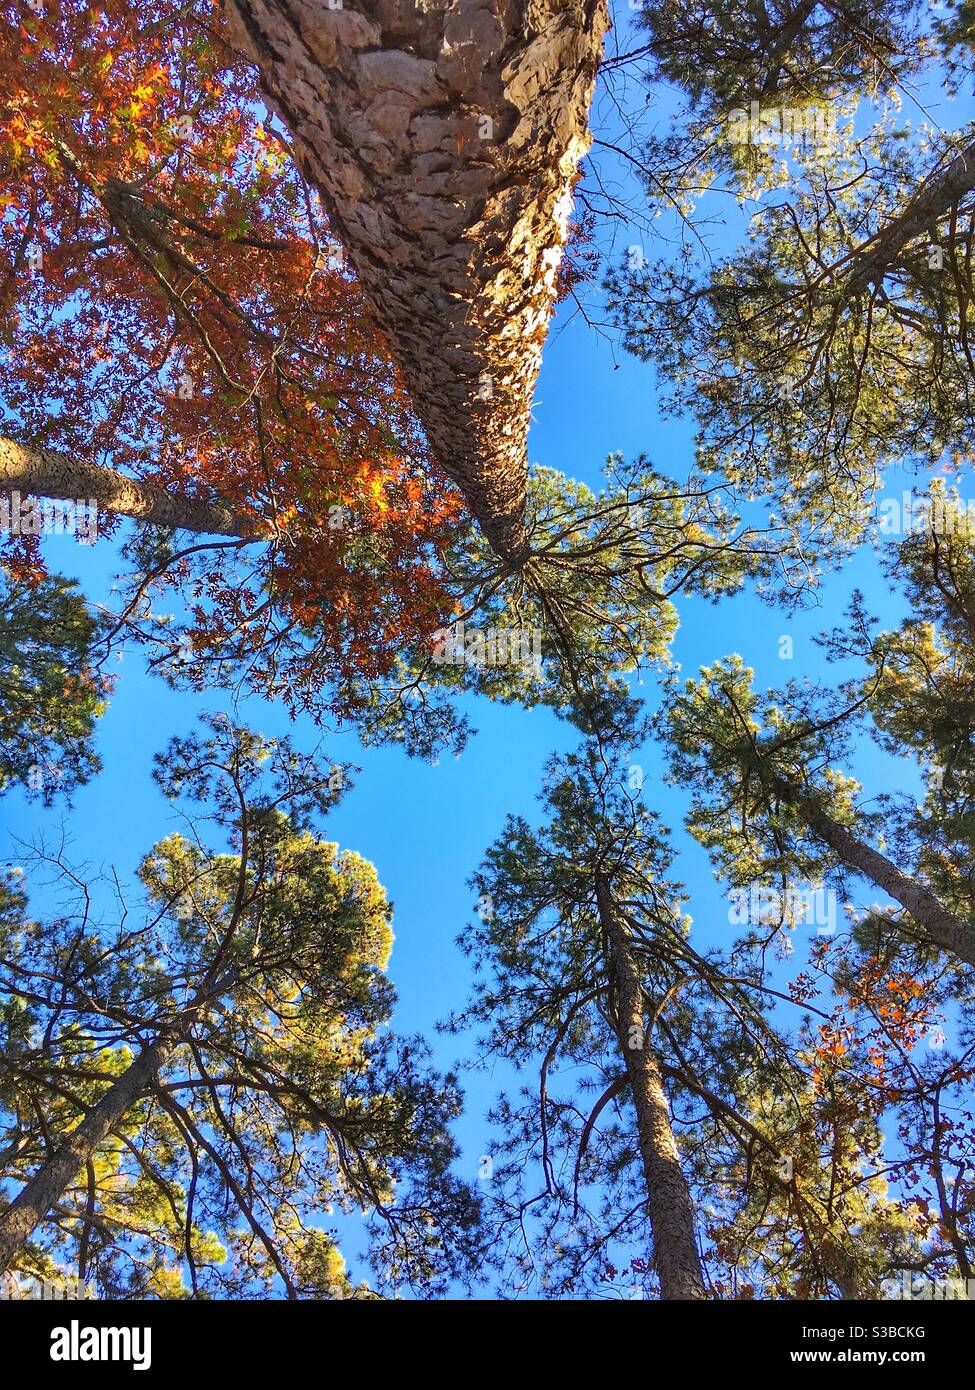 Fall pine trees in Oklahoma Stock Photo